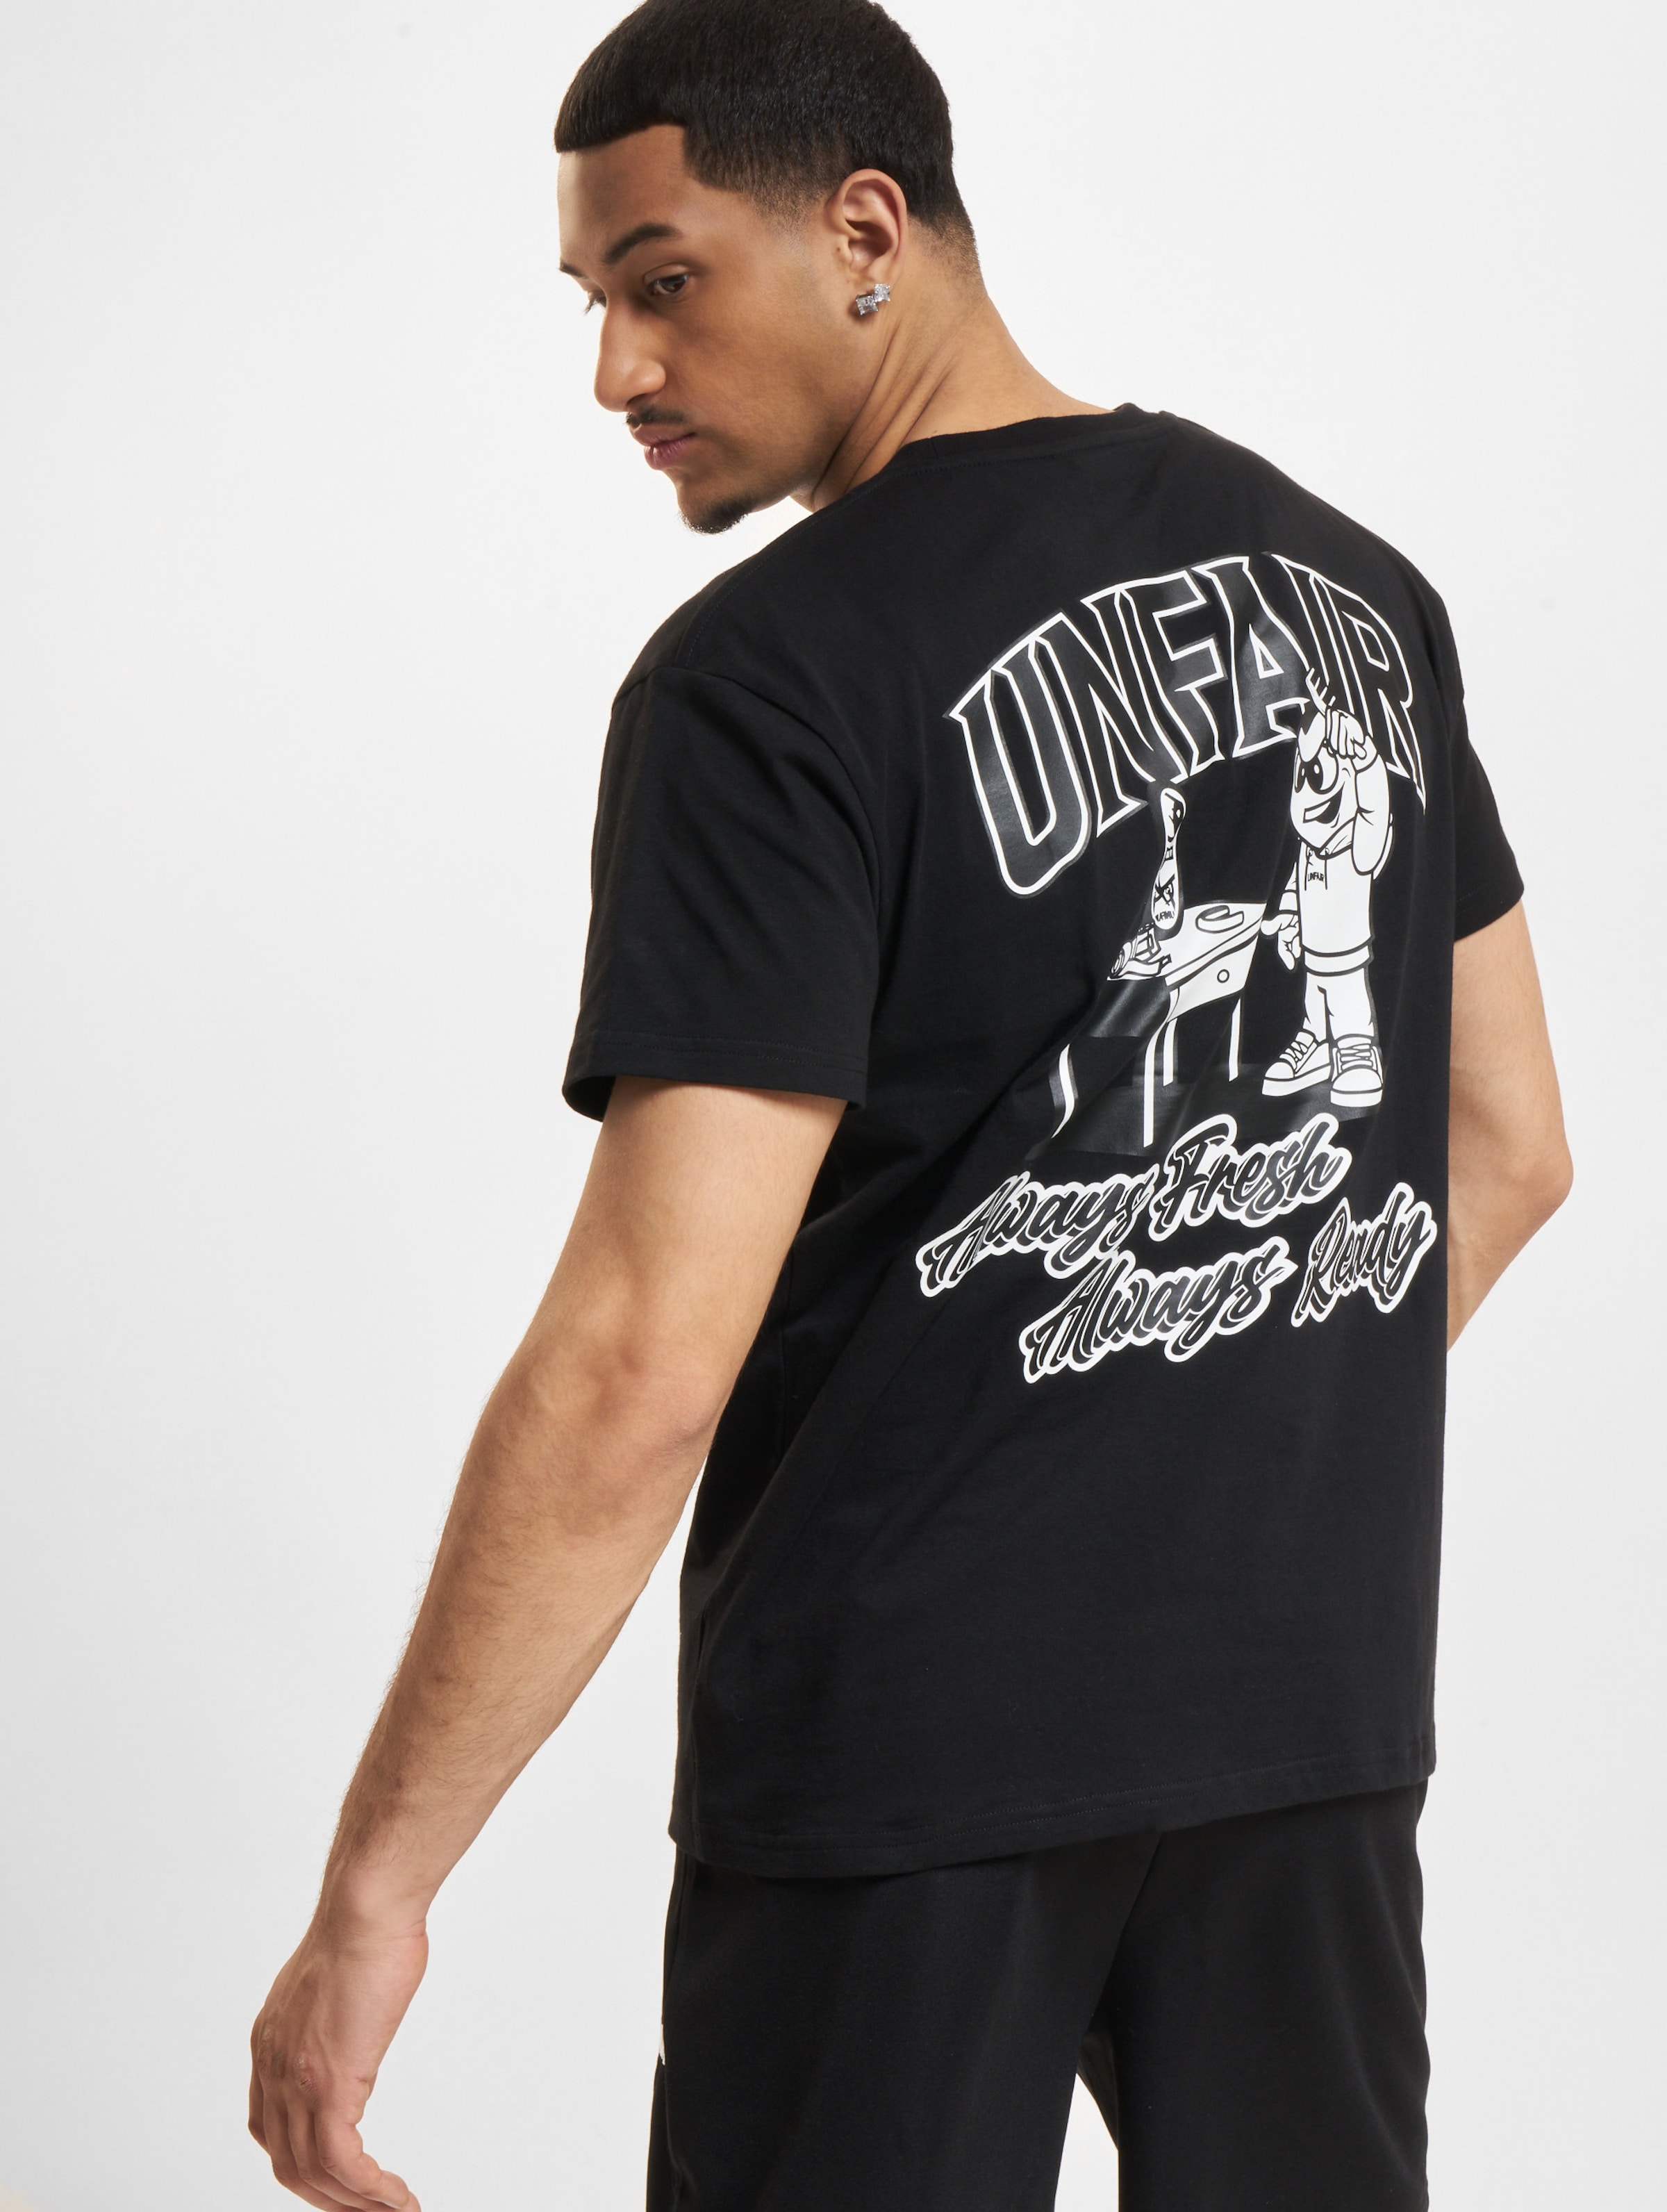 UNFAIR ATHLETICS Always Ready T-Shirt Männer,Unisex op kleur zwart, Maat XXL